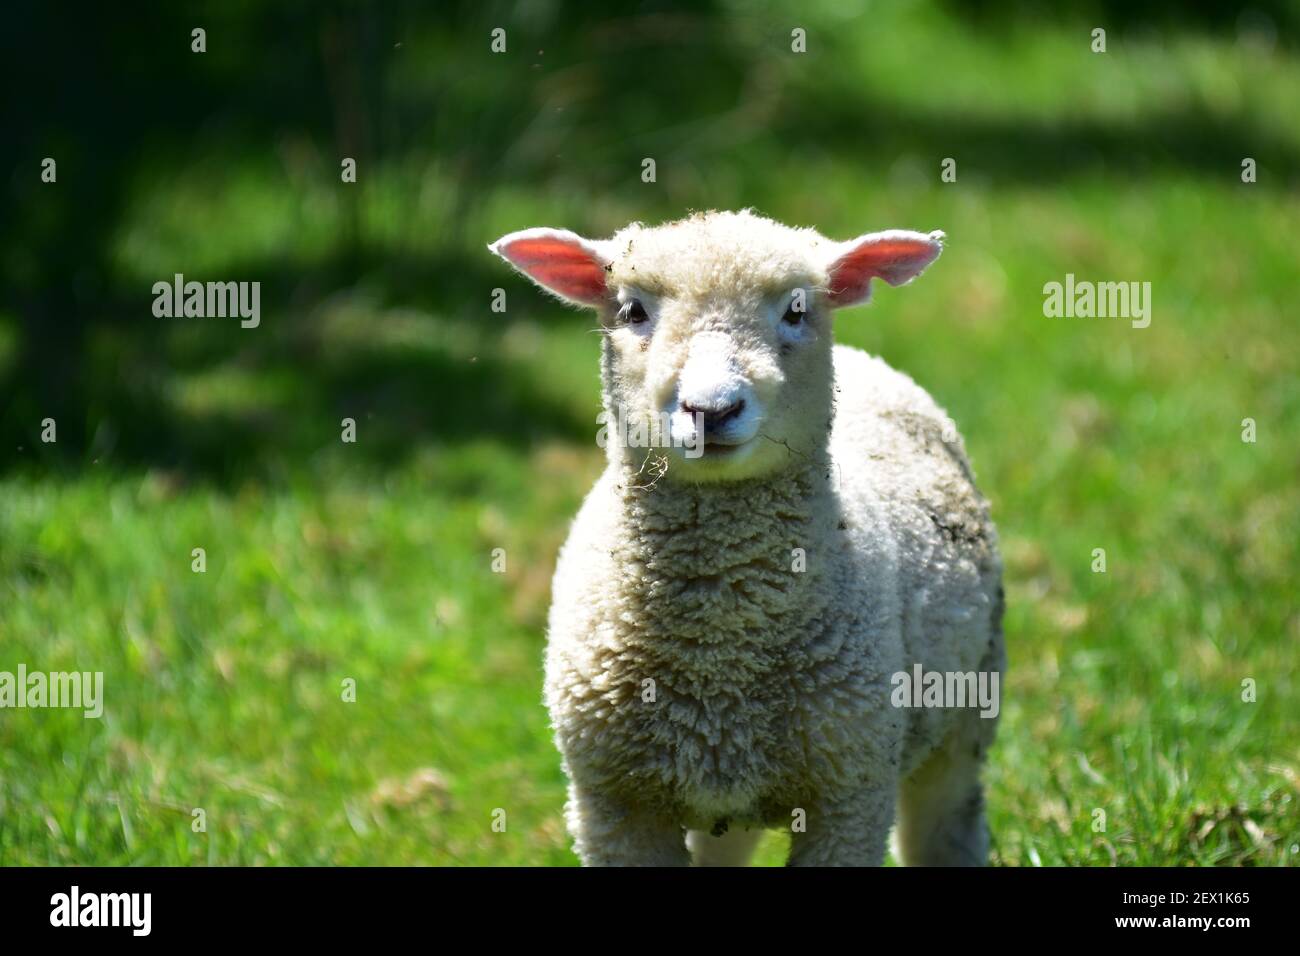 Agnello inquisitivo con il viso carino e pelliccia come la lana guardando direttamente nell'obiettivo della fotocamera. Foto Stock